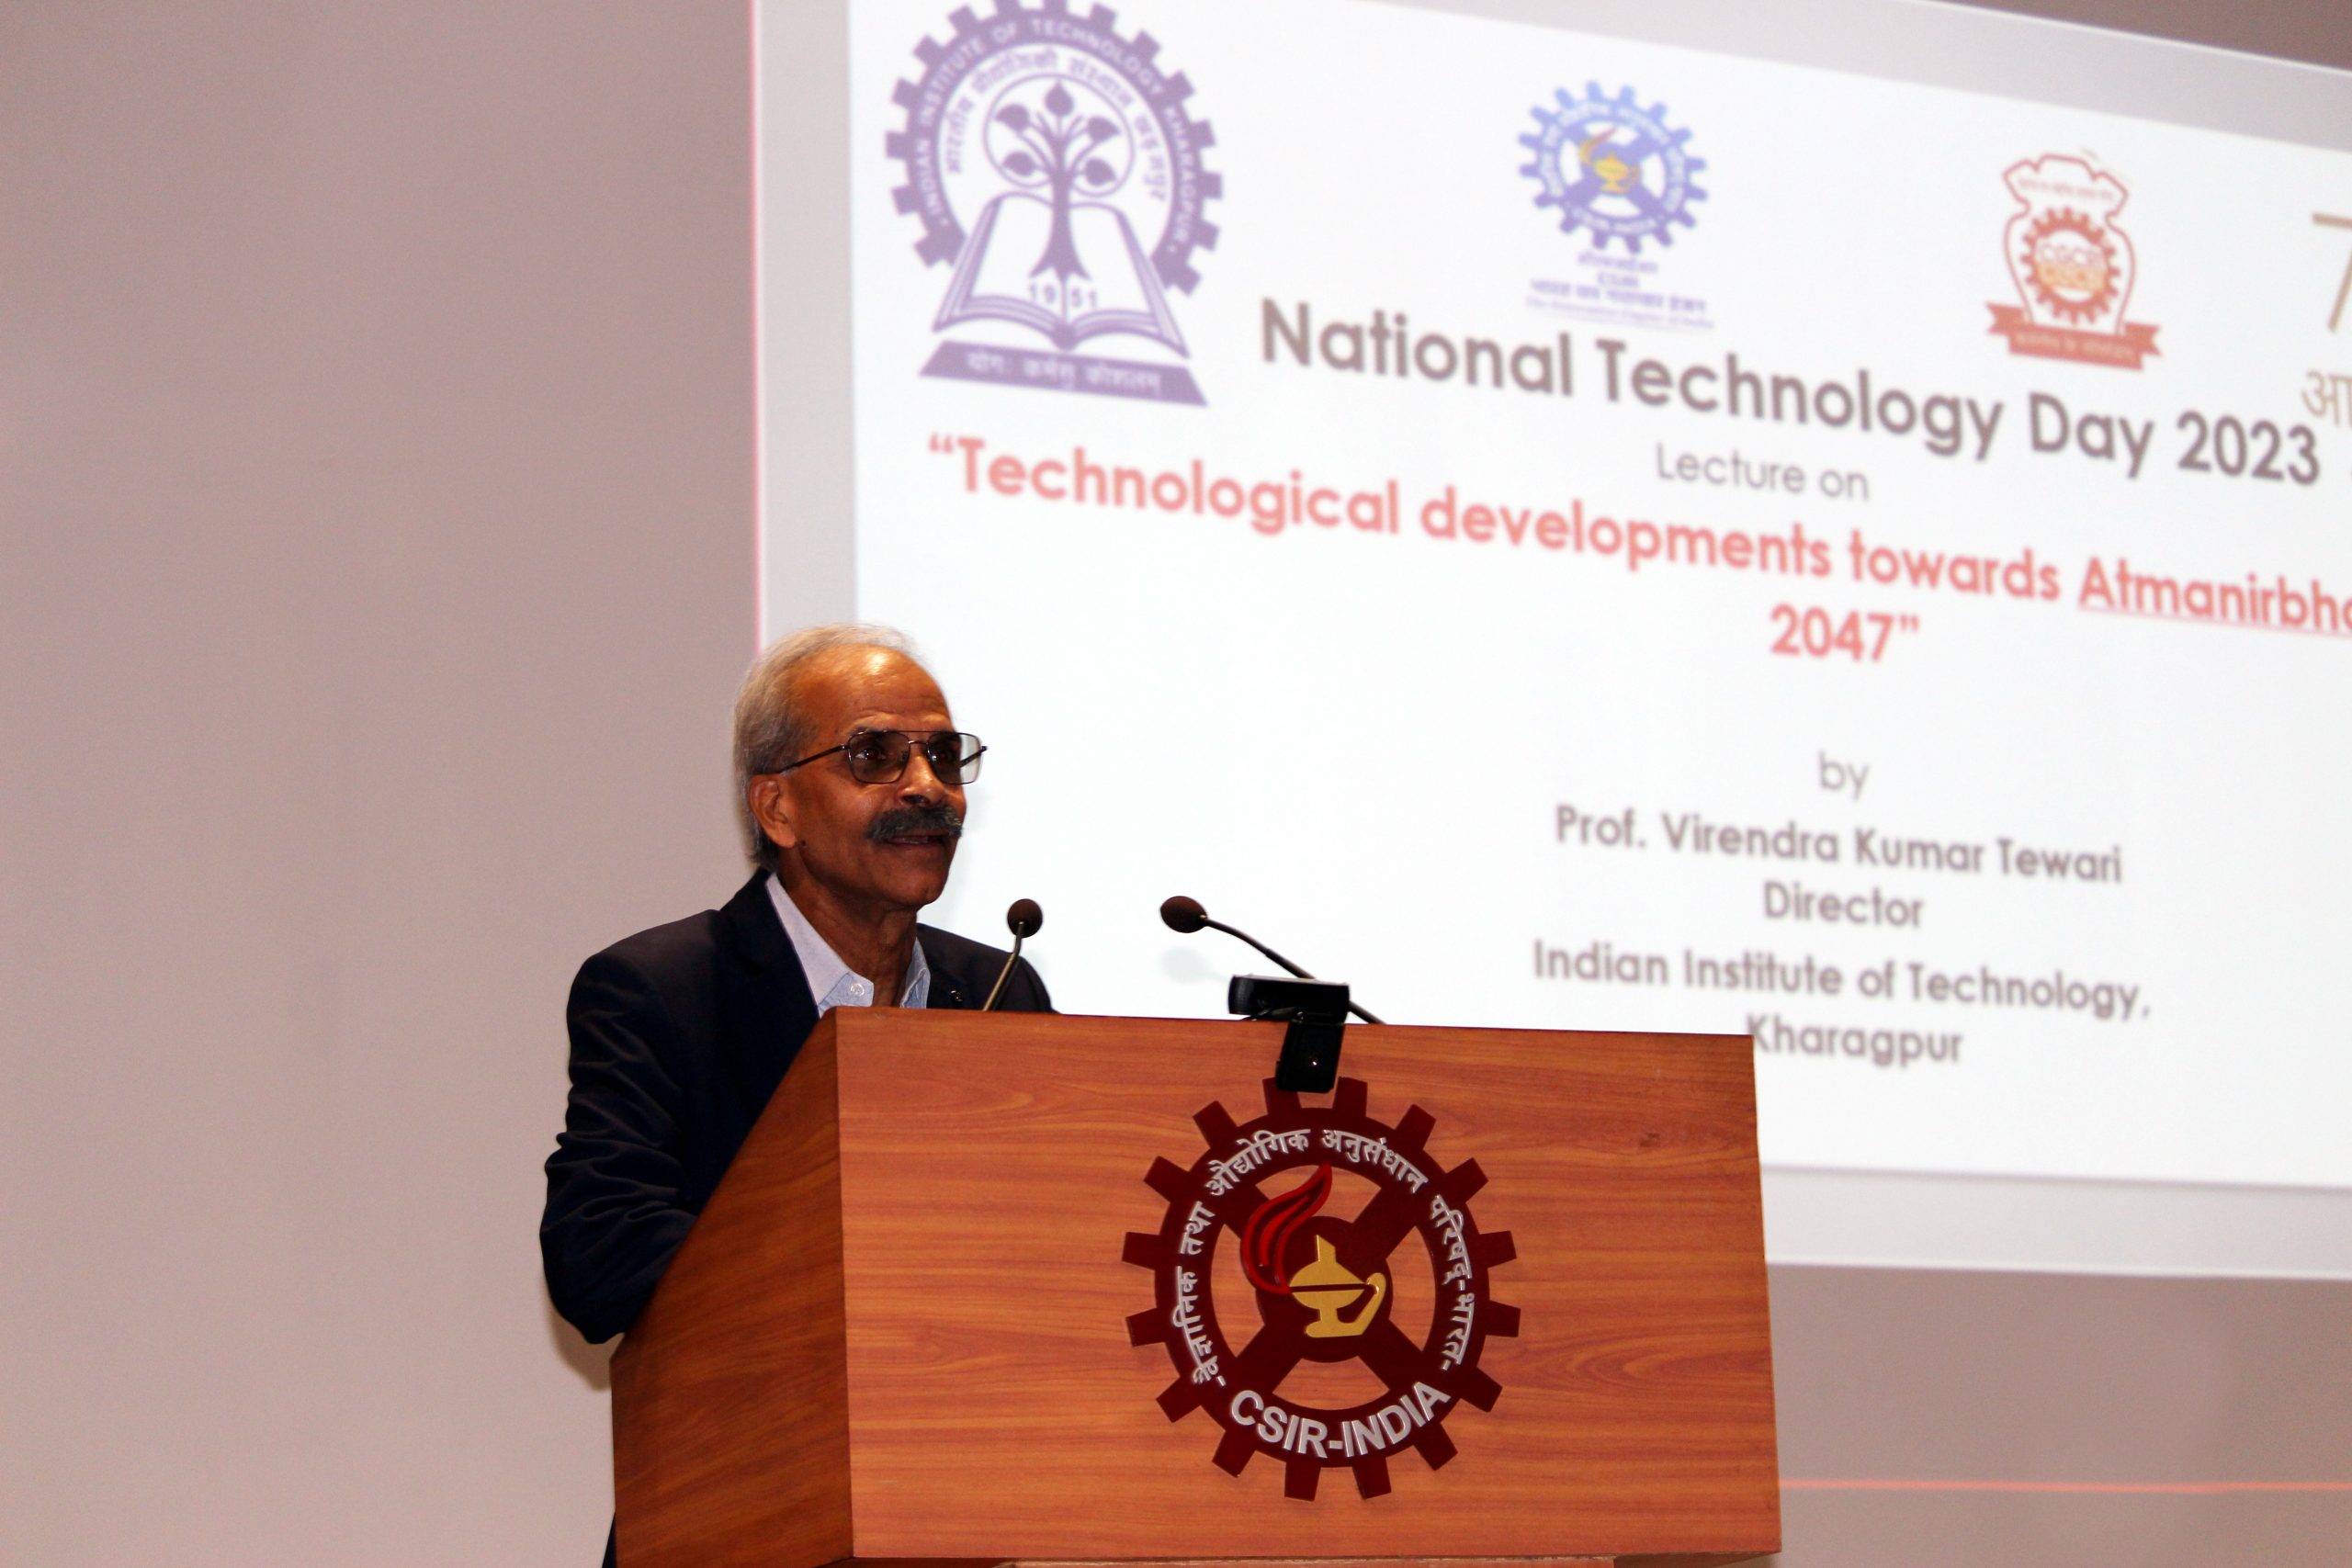 National Technology Day Celebration 2023